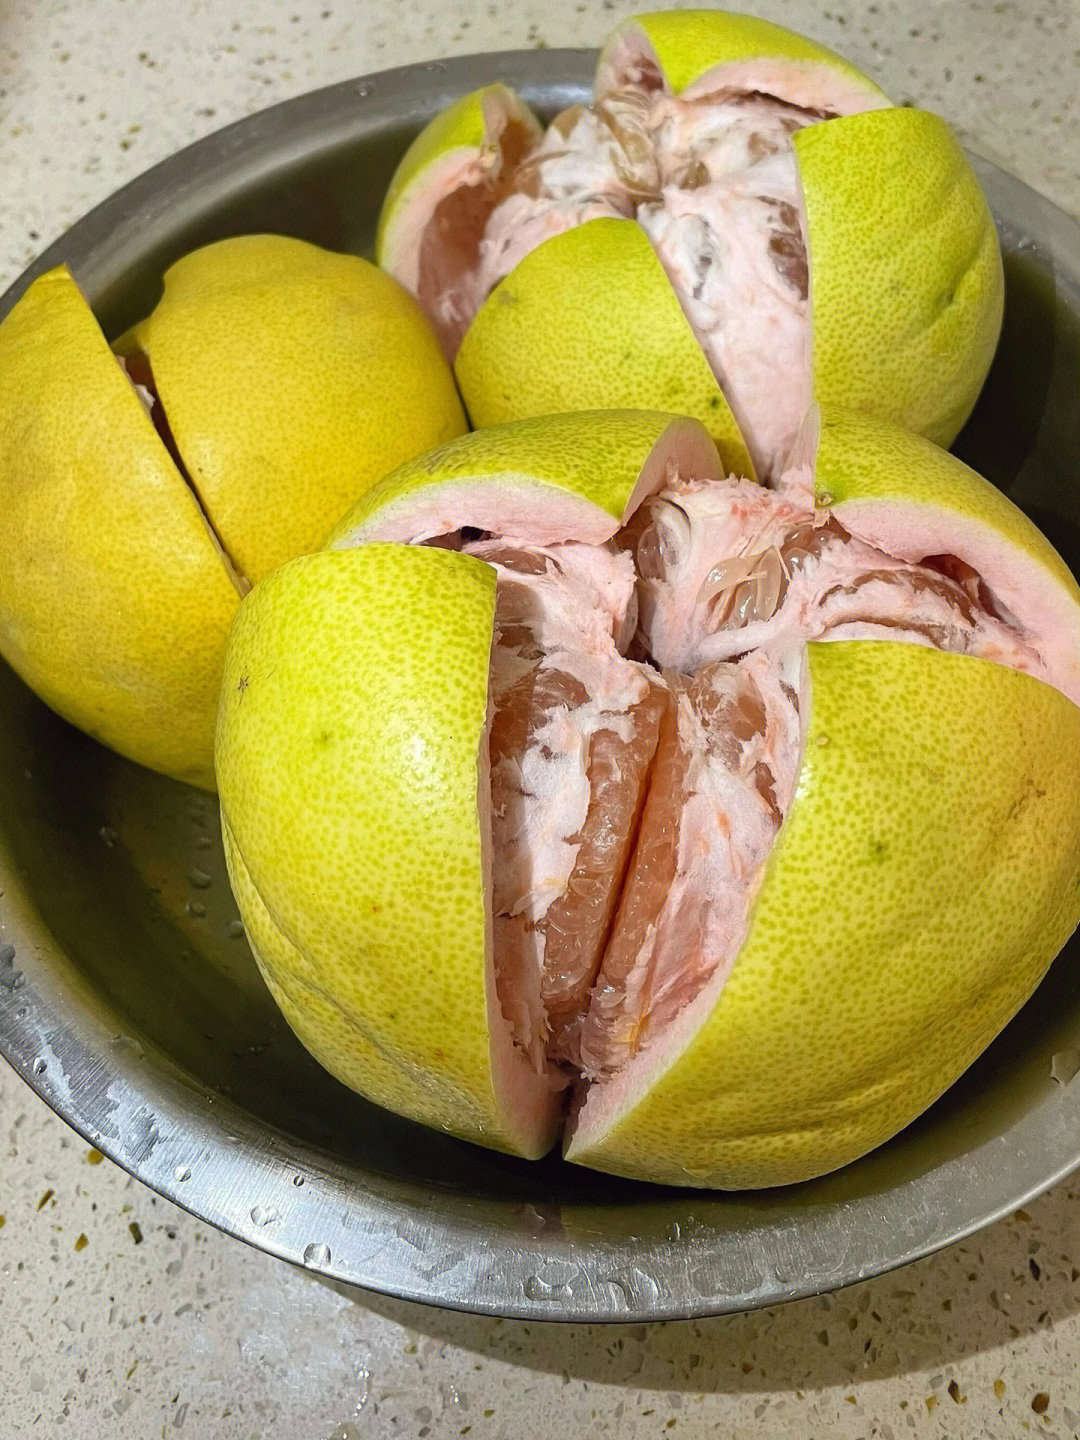 做柚子糖简单洗柚子瓤超烦过程一度崩溃